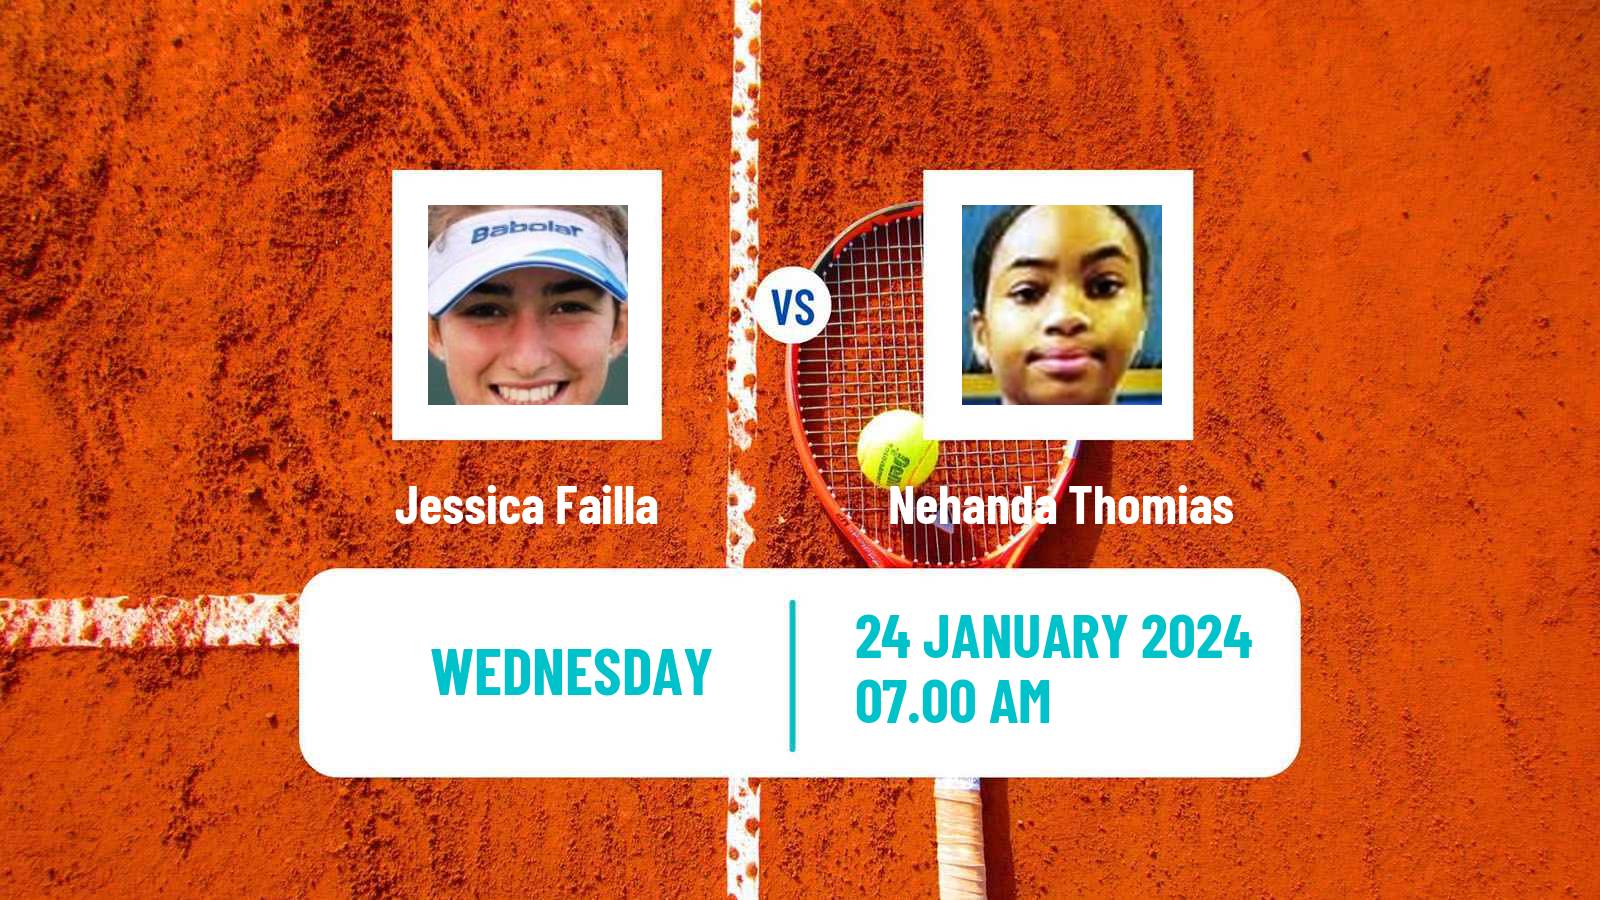 Tennis ITF W35 Le Gosier Women Jessica Failla - Nehanda Thomias